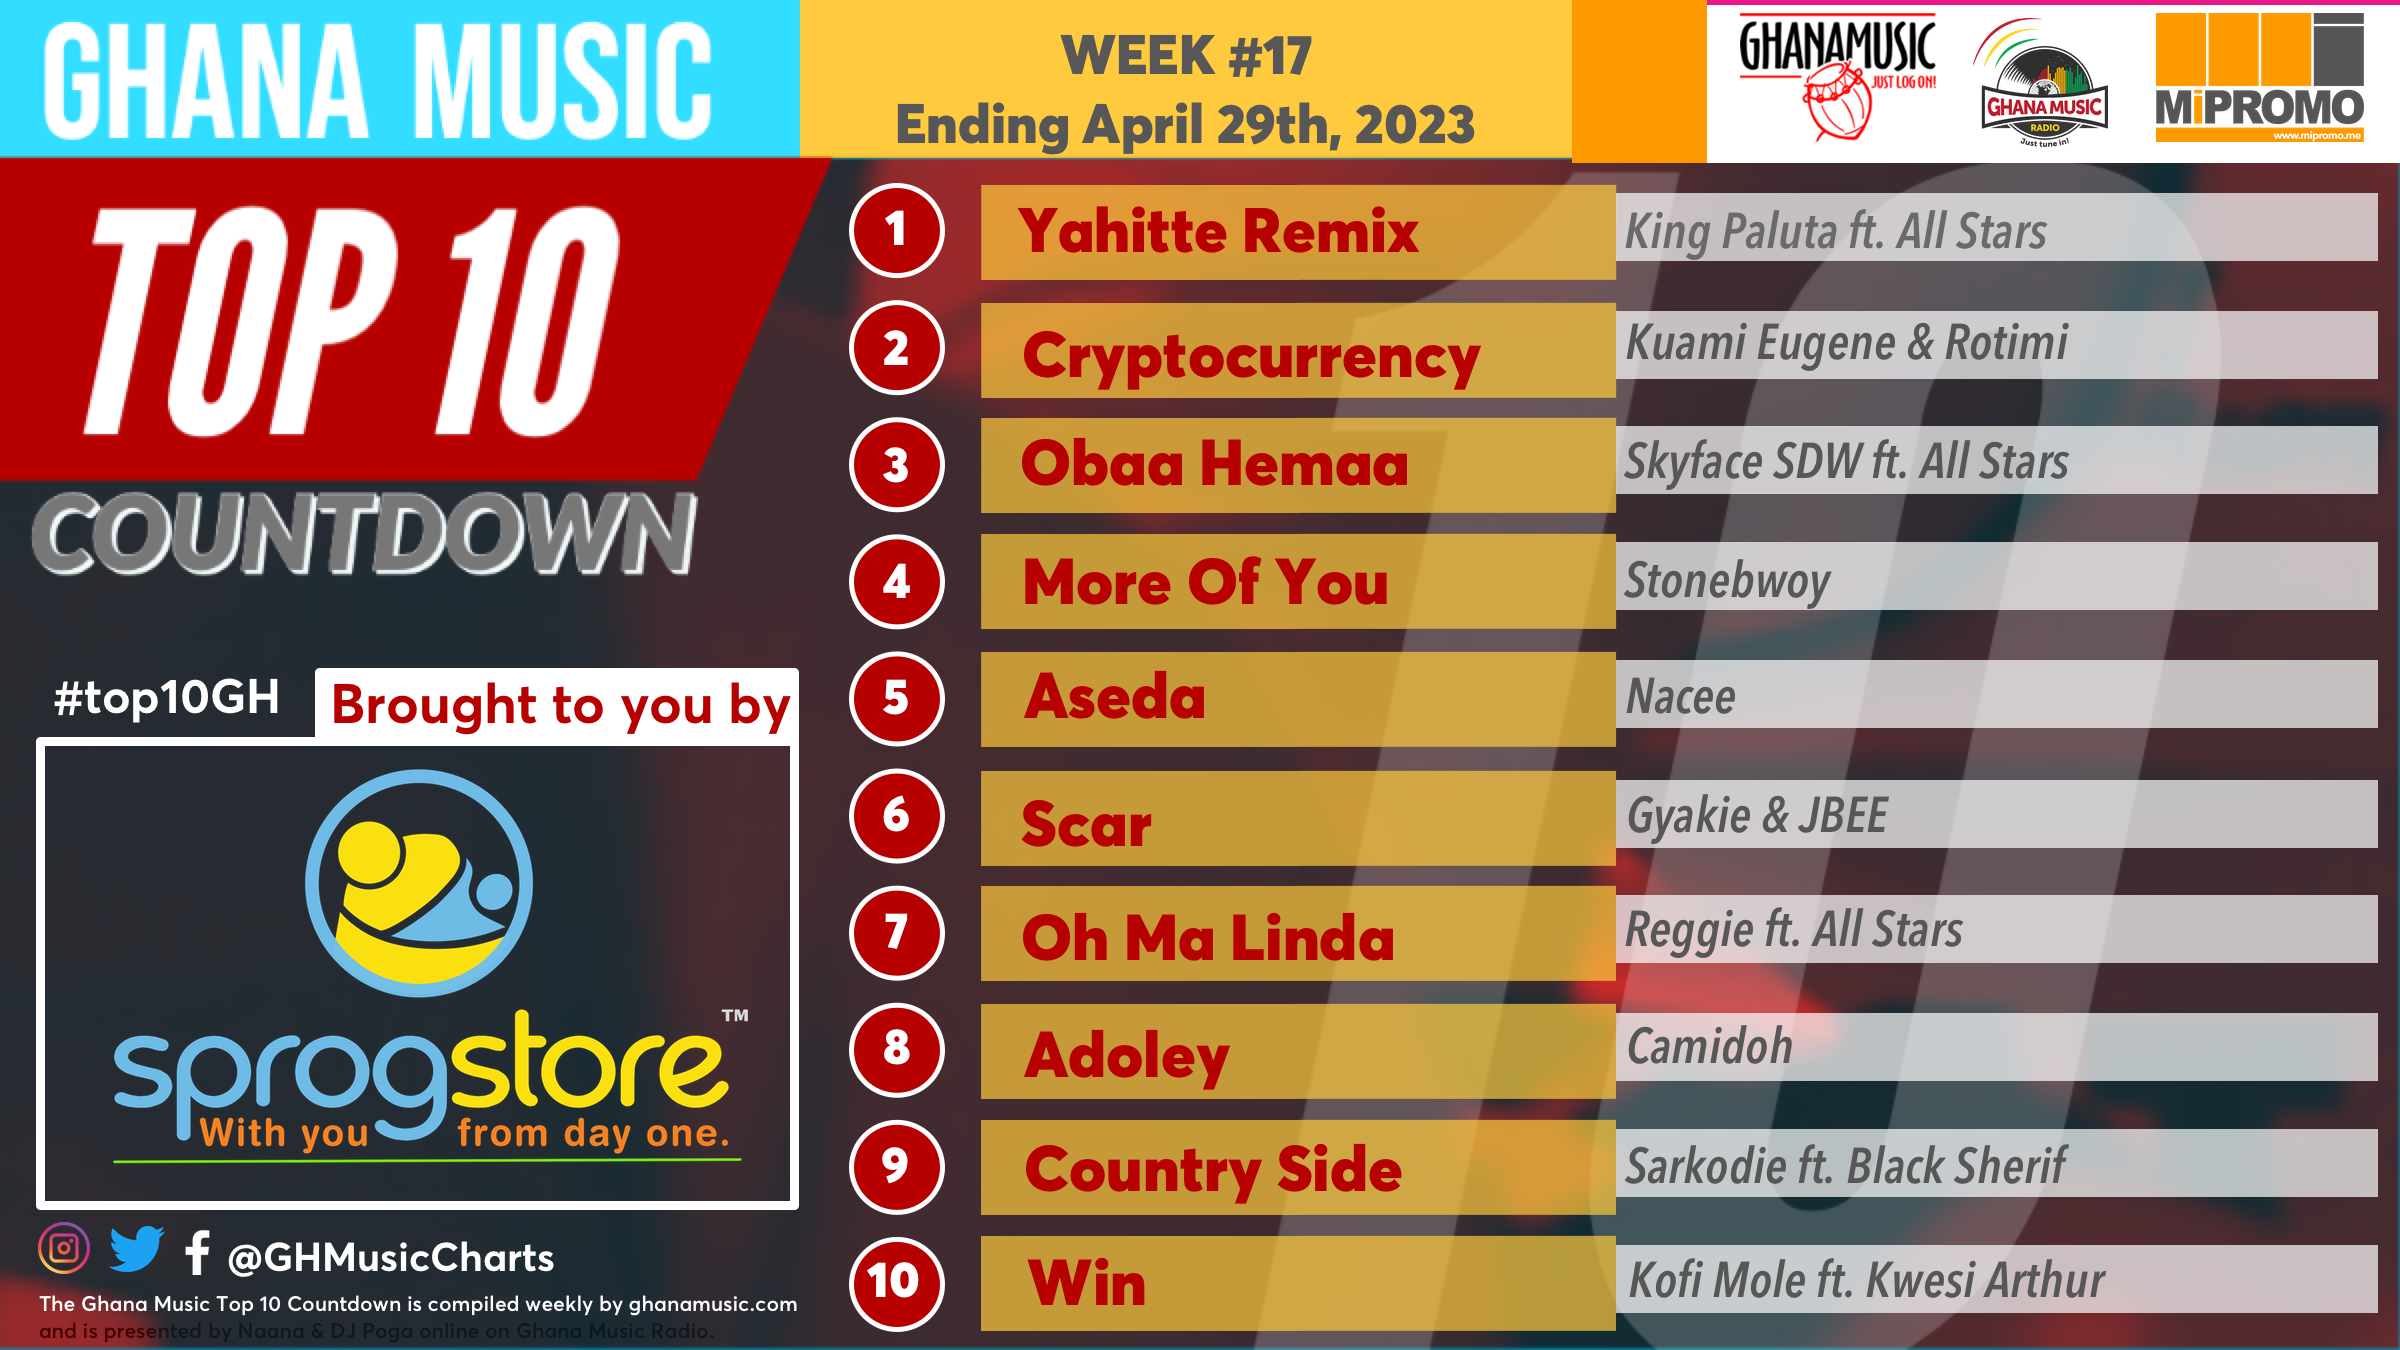 2023 Week 17: Ghana Music Top 10 Countdown